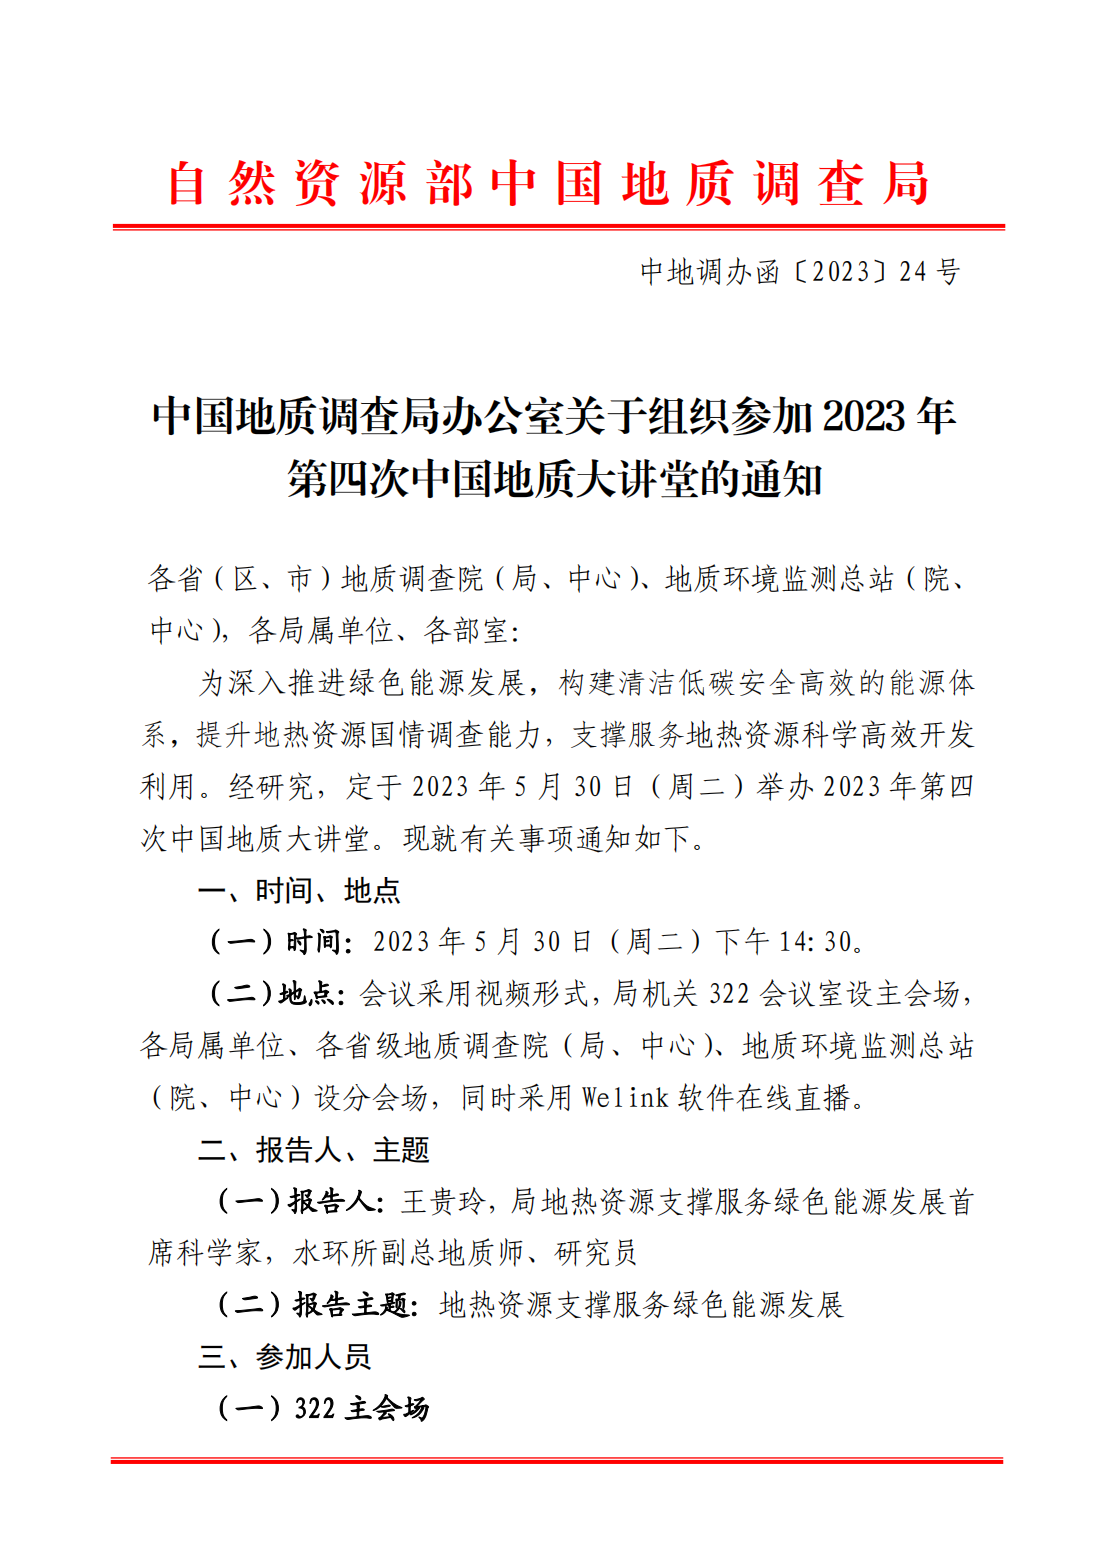 中国地质调查局办公室关于组织参加2023年第四次中国地质大讲堂的通知(1)(1)_00.png